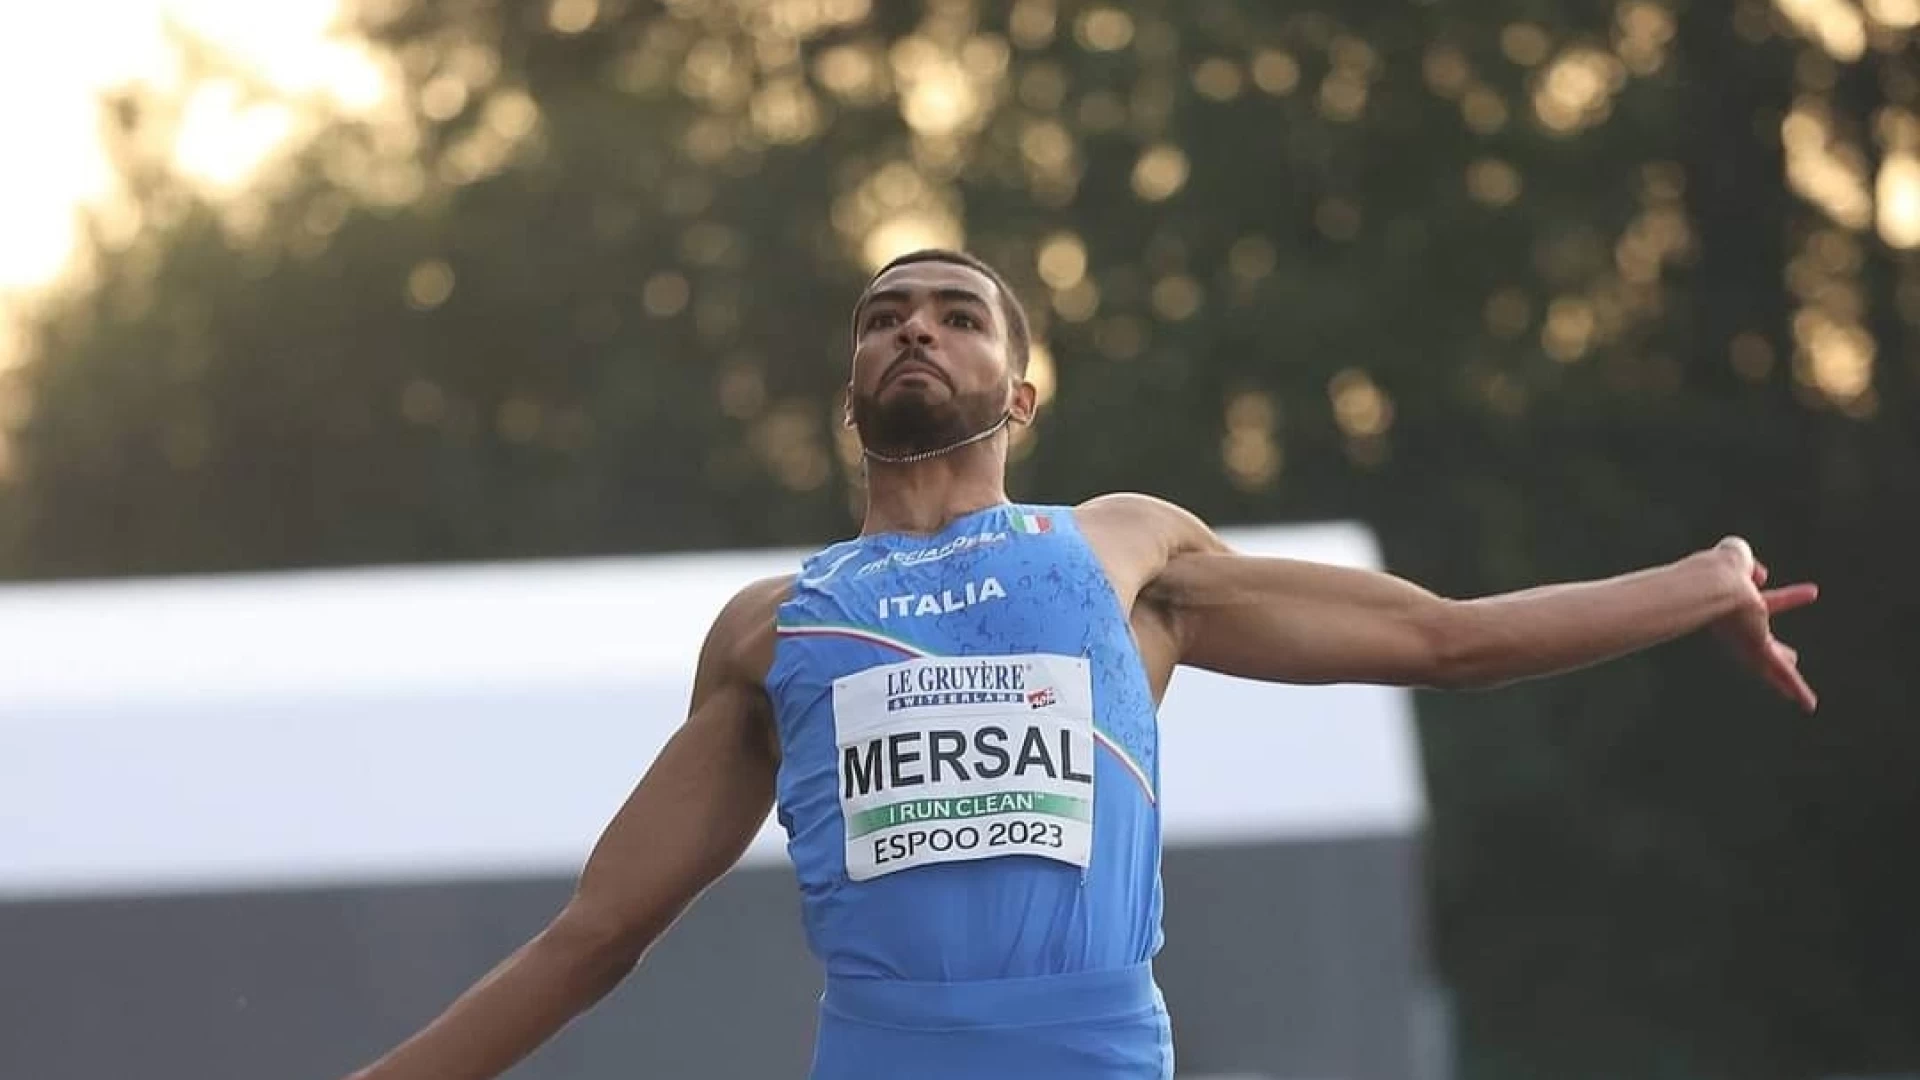 Salto in lungo, Kareem Mersal campione d'Italia Assoluto